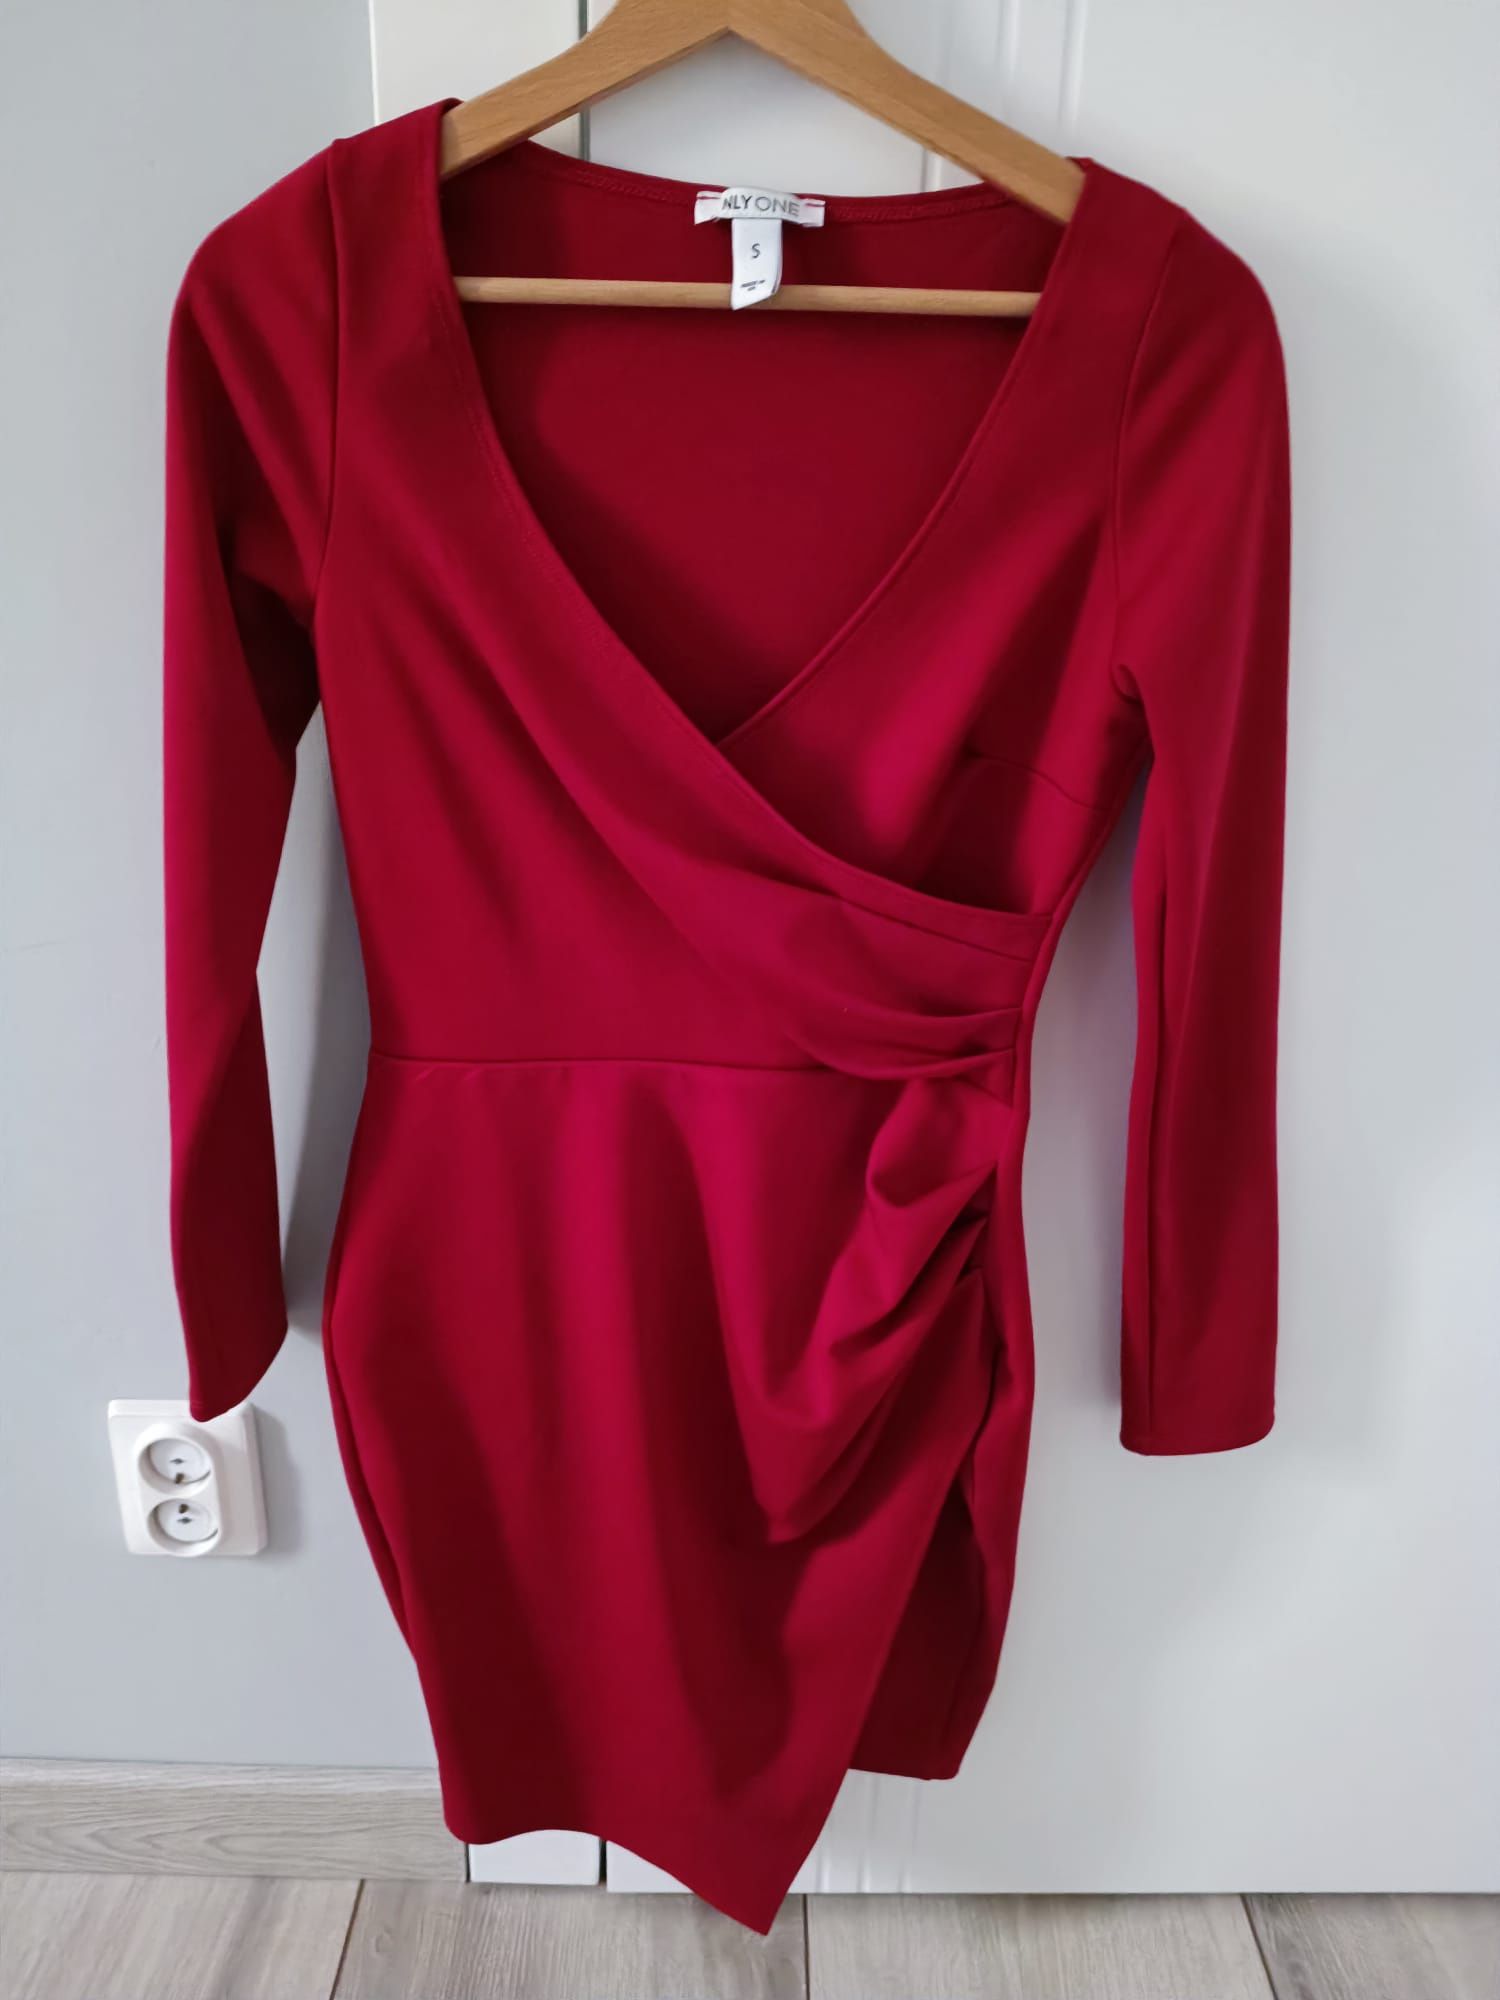 Czerwona sukienka NLY one 36 S